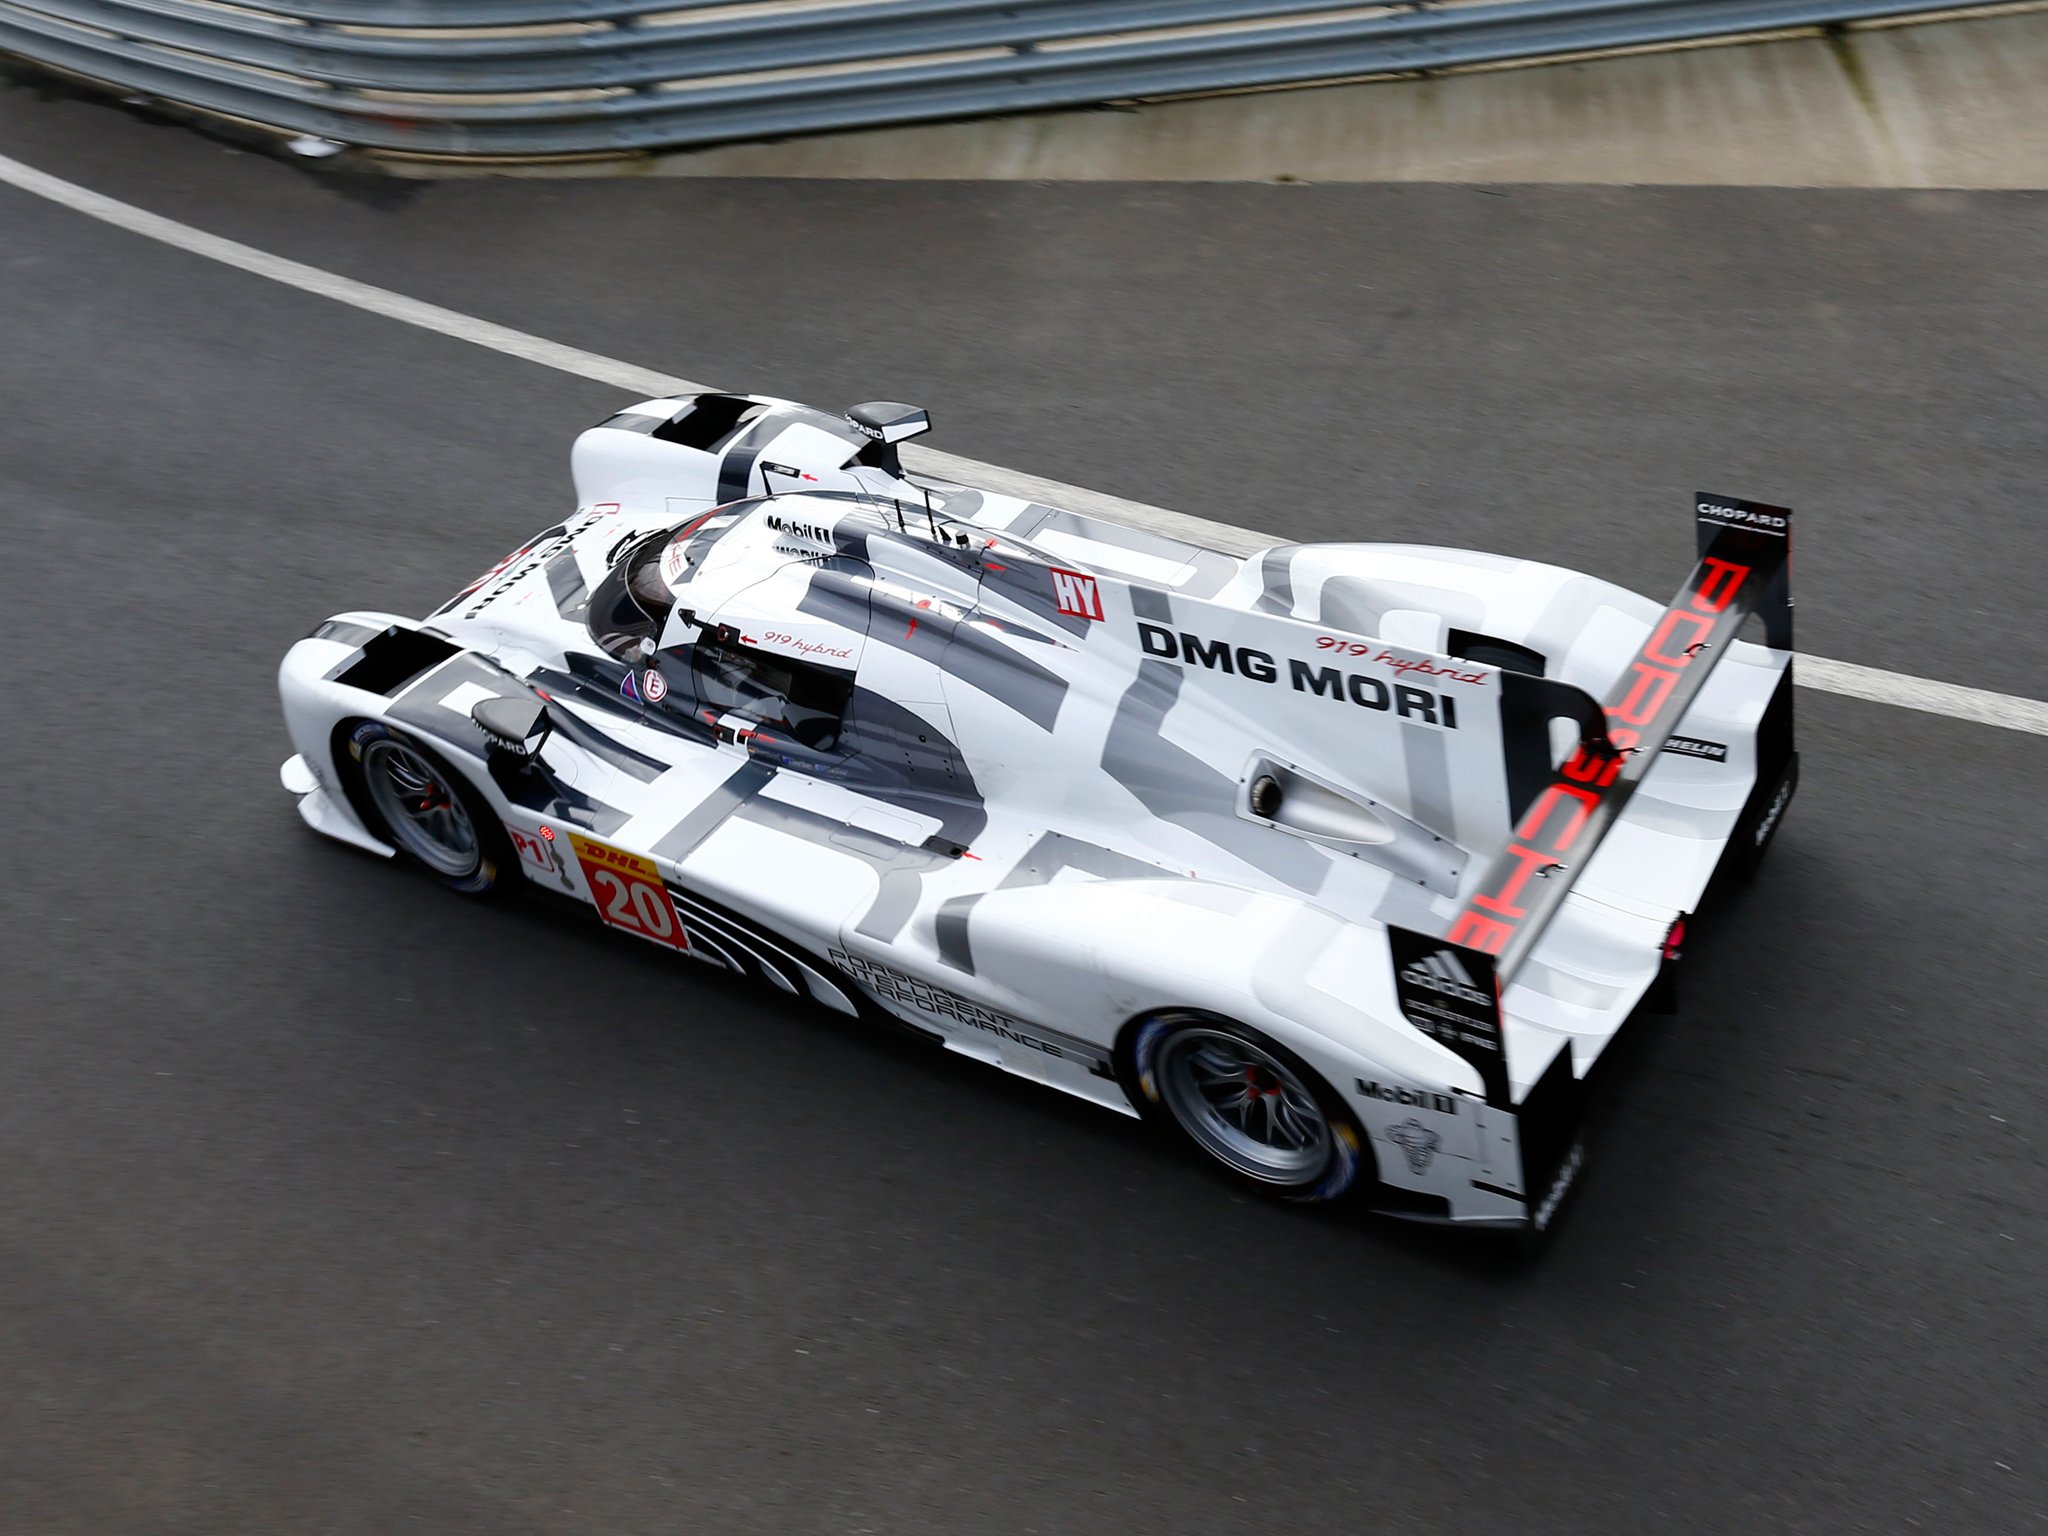 2014, Porsche, 919, Hybrid, Le mans, Race, Racing, Lemans Wallpaper